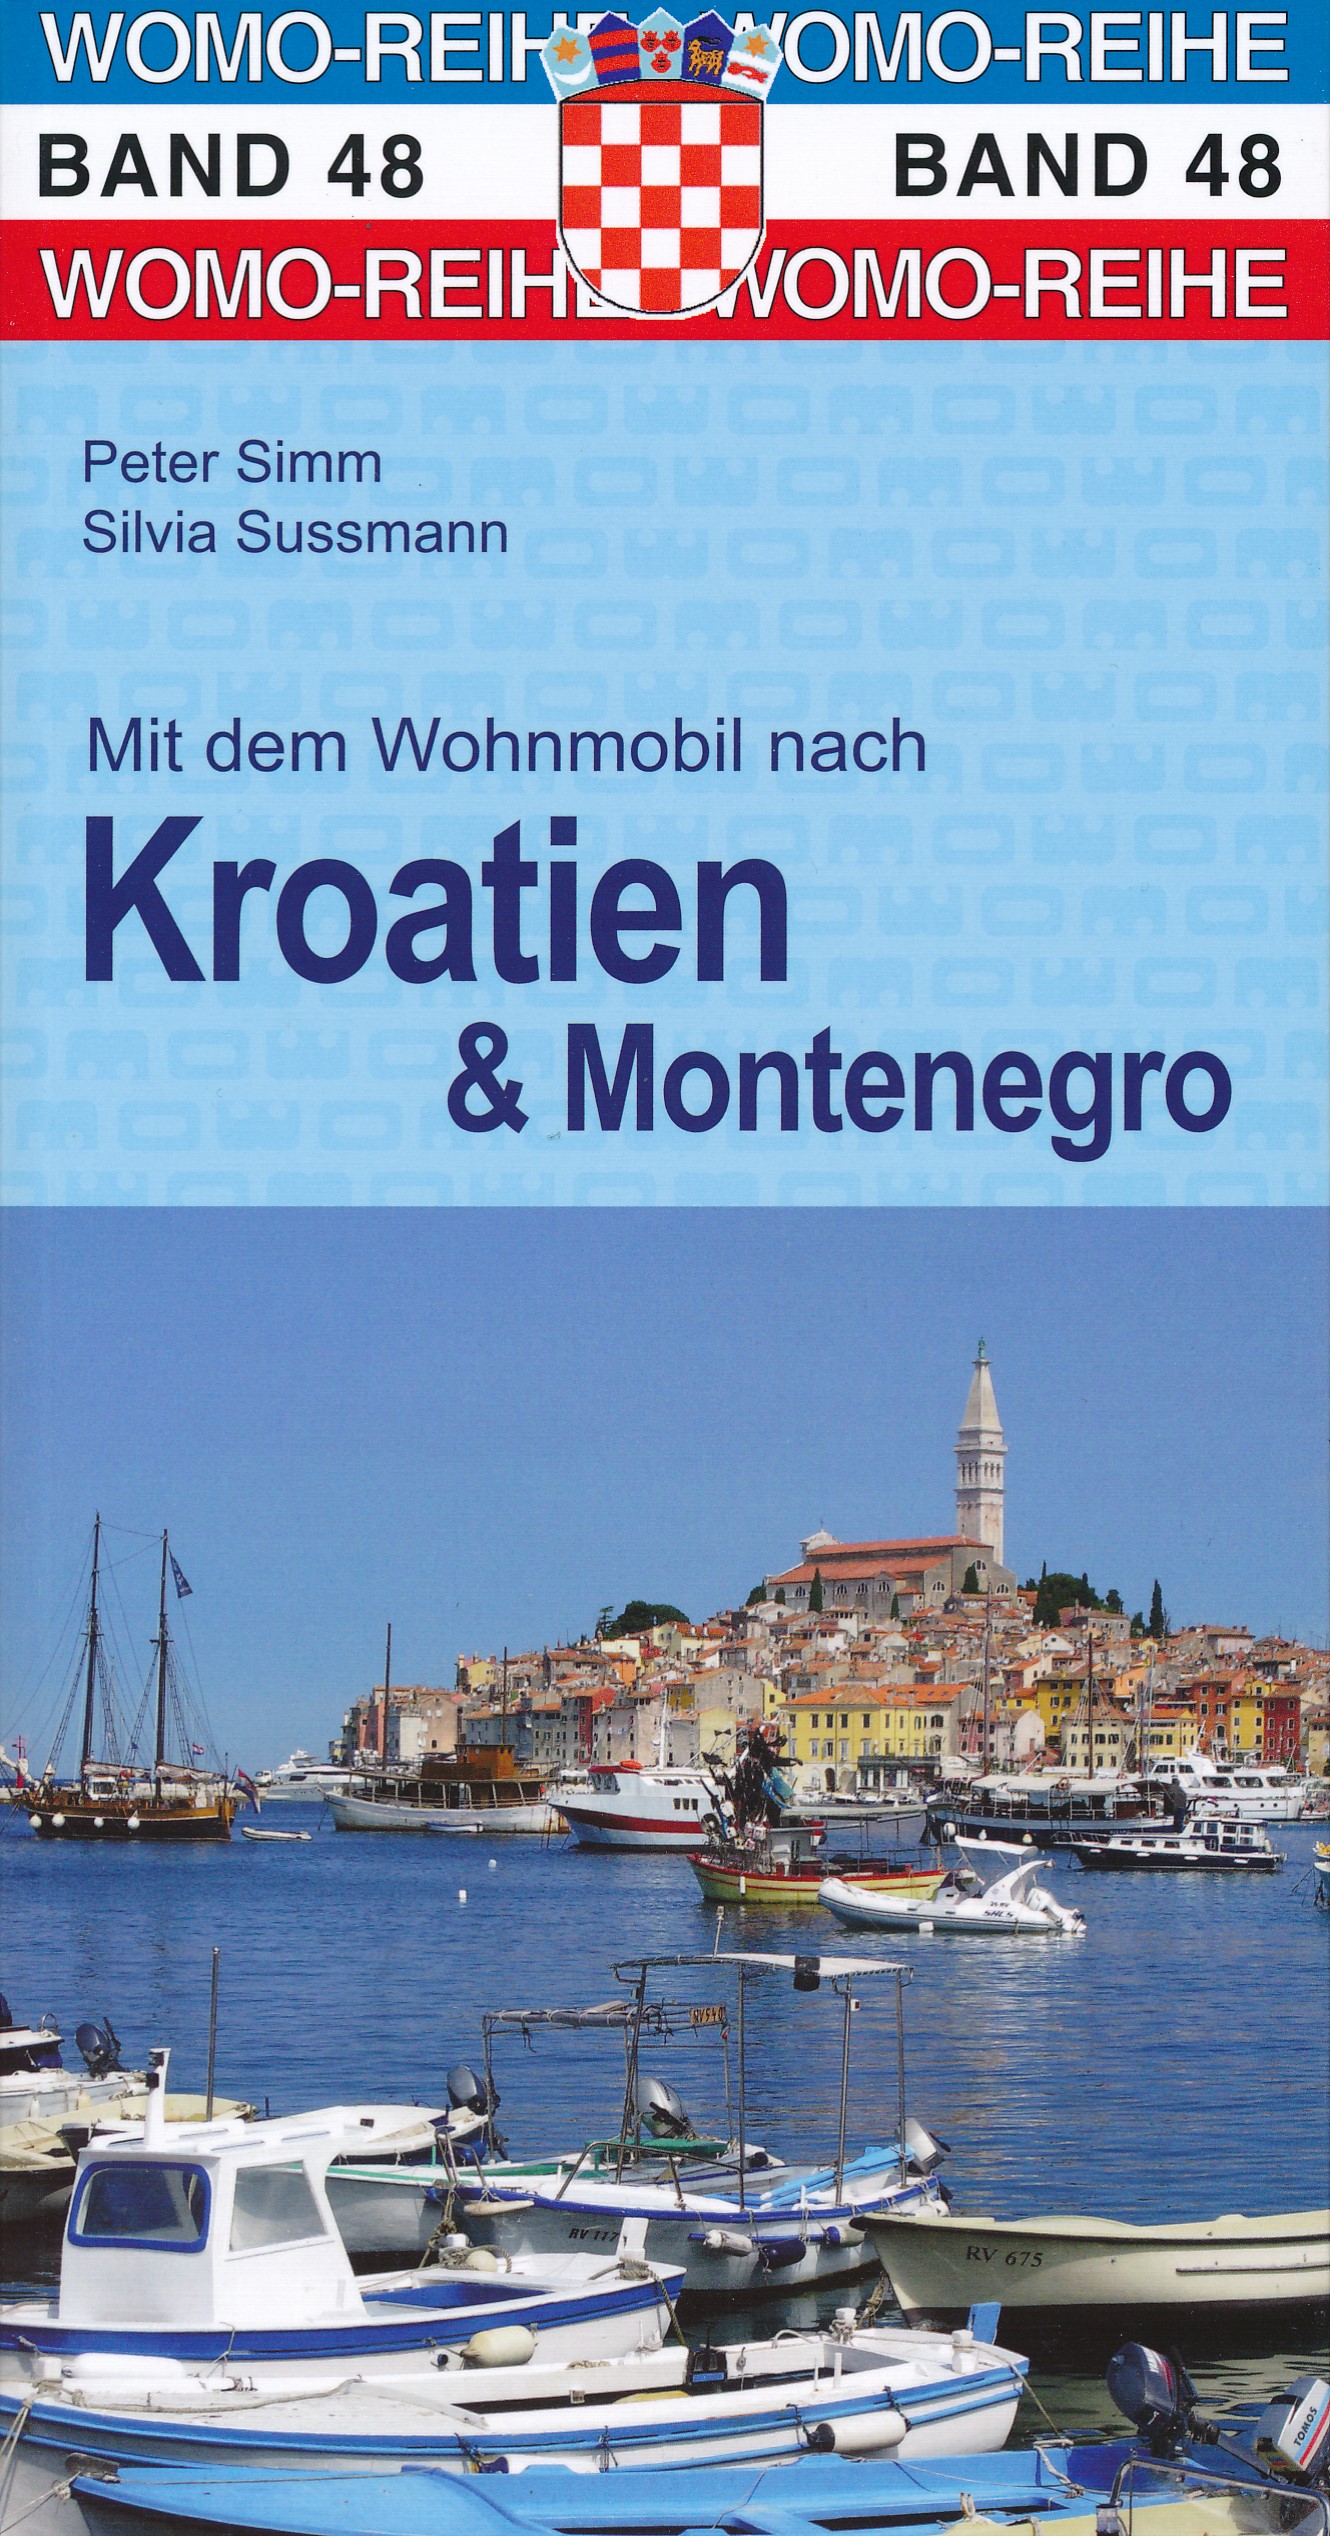 Online bestellen: Campergids 48 Mit dem Wohnmobil nach Kroatien Montenegro - Camper Kroatië | WOMO verlag